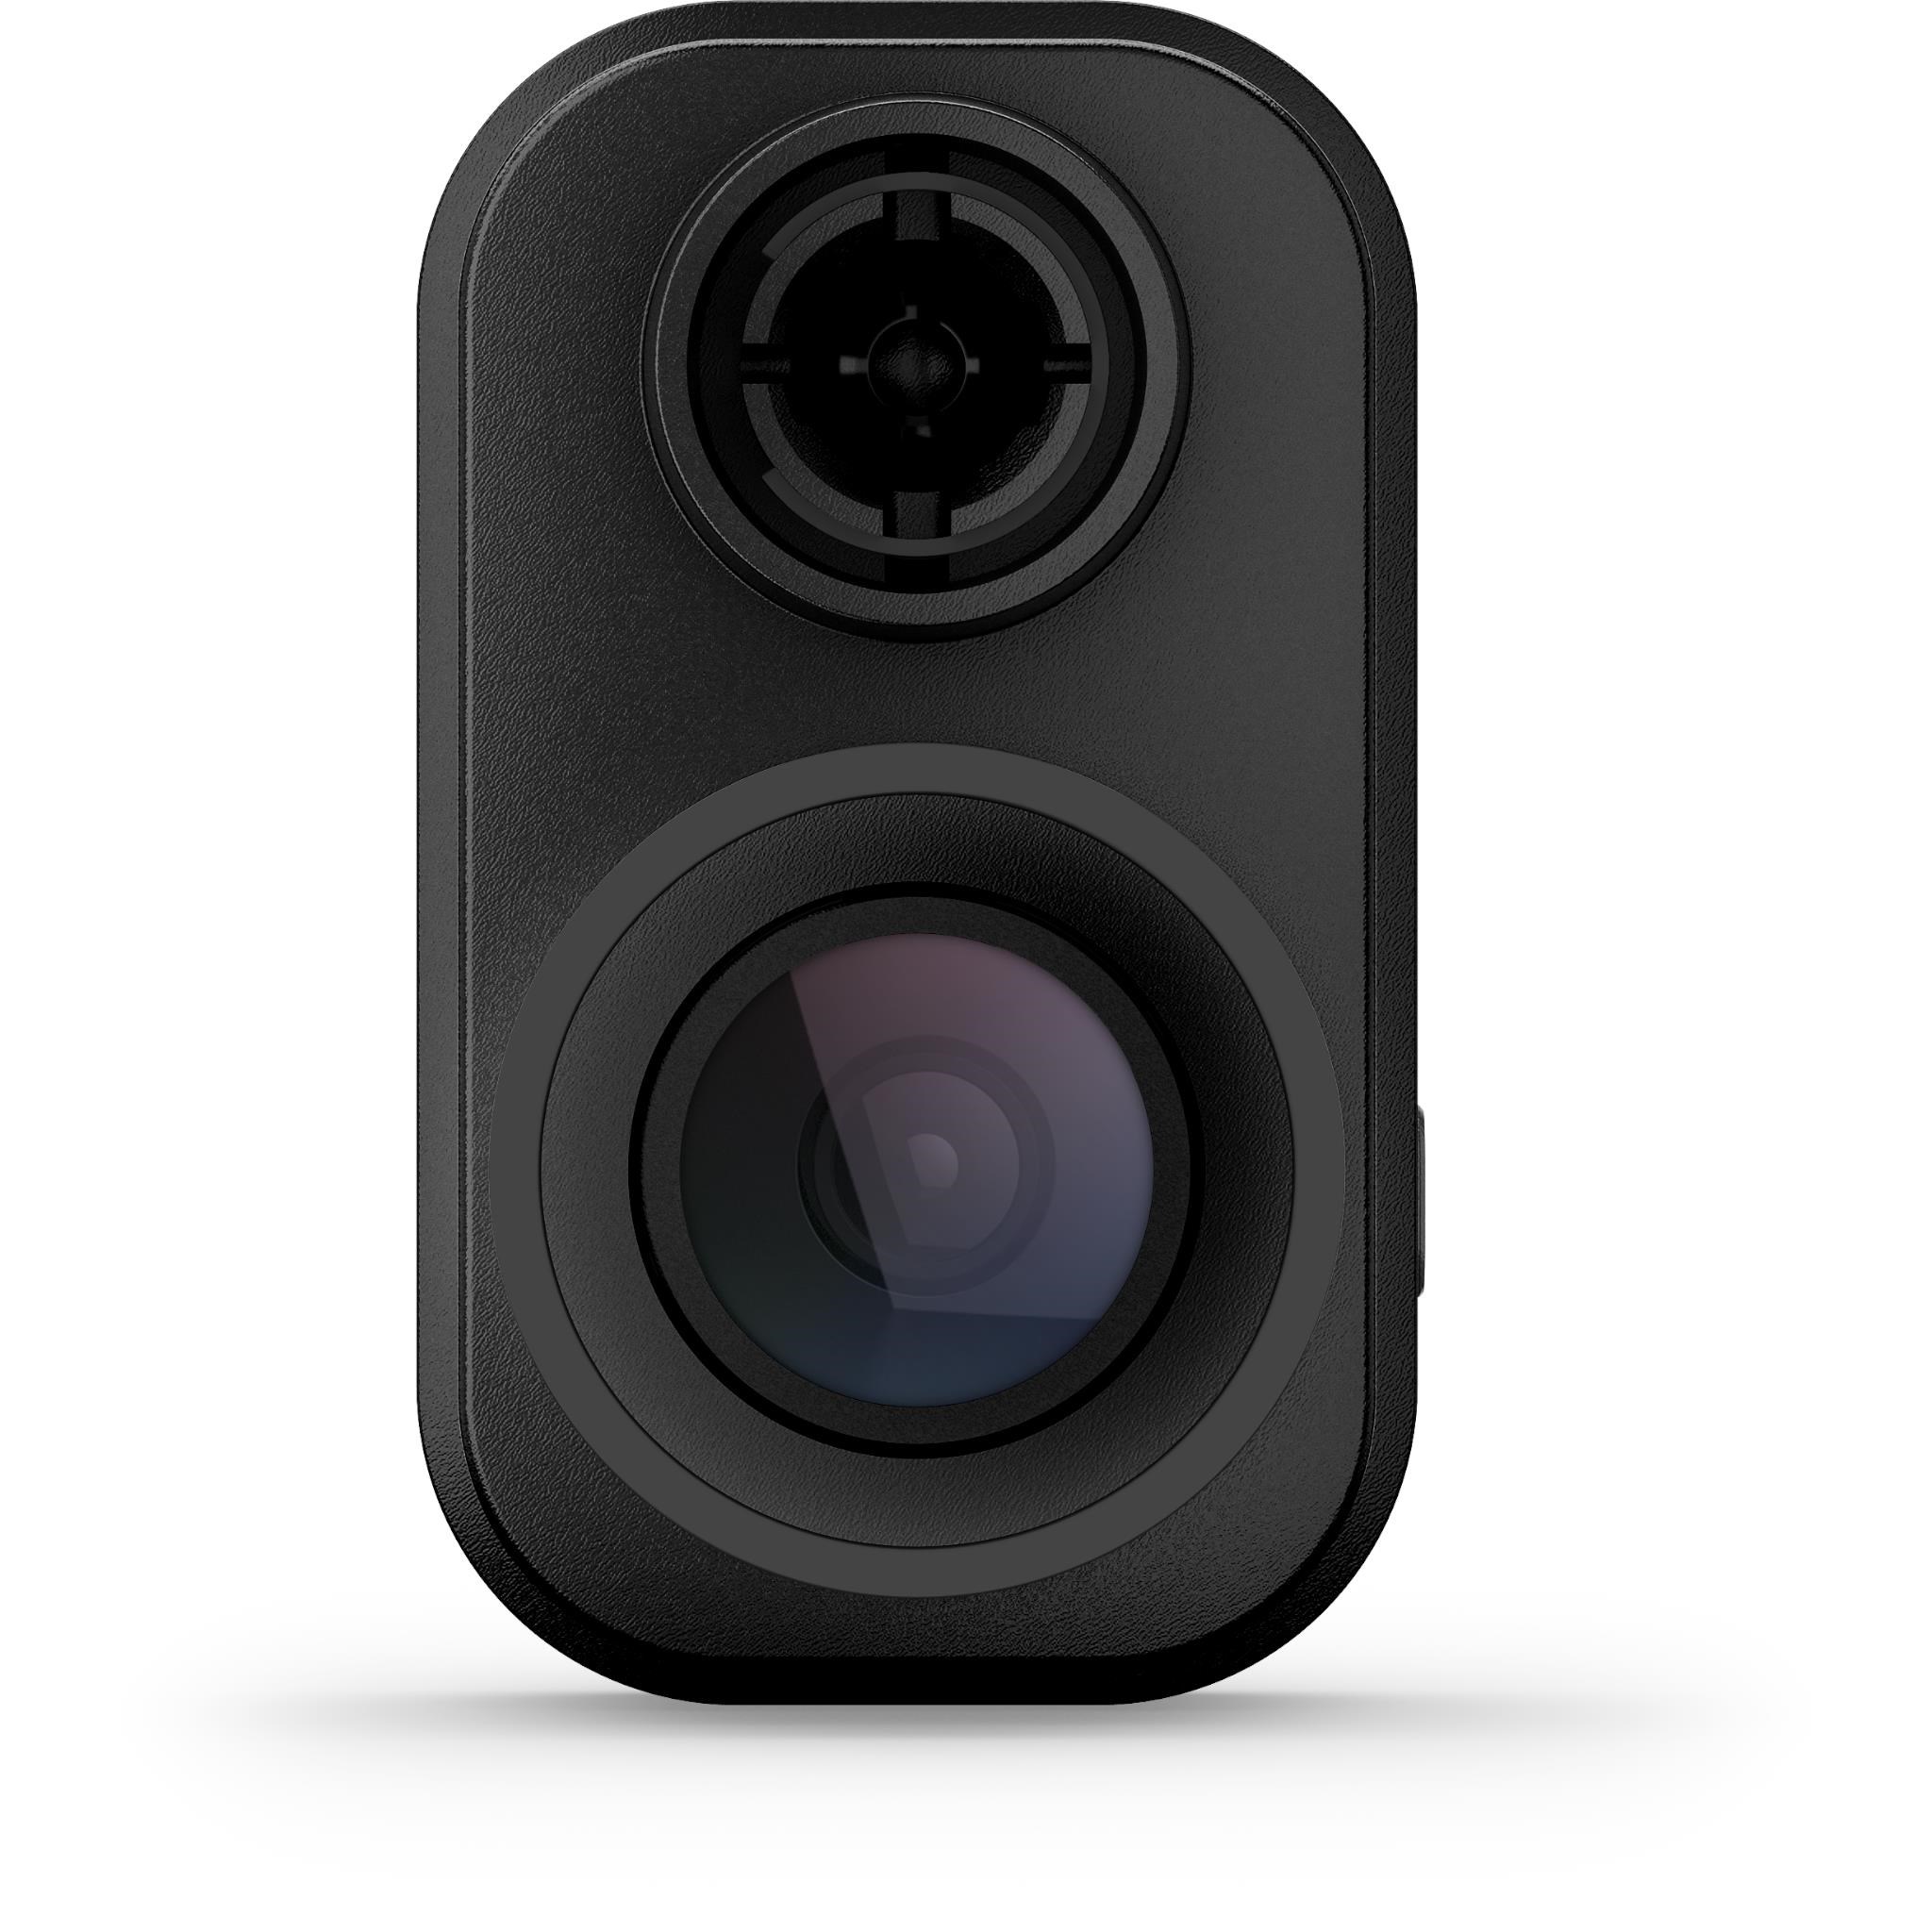 Garmin 1080p Dash Cam Mini 2 with Voice Control, Incident